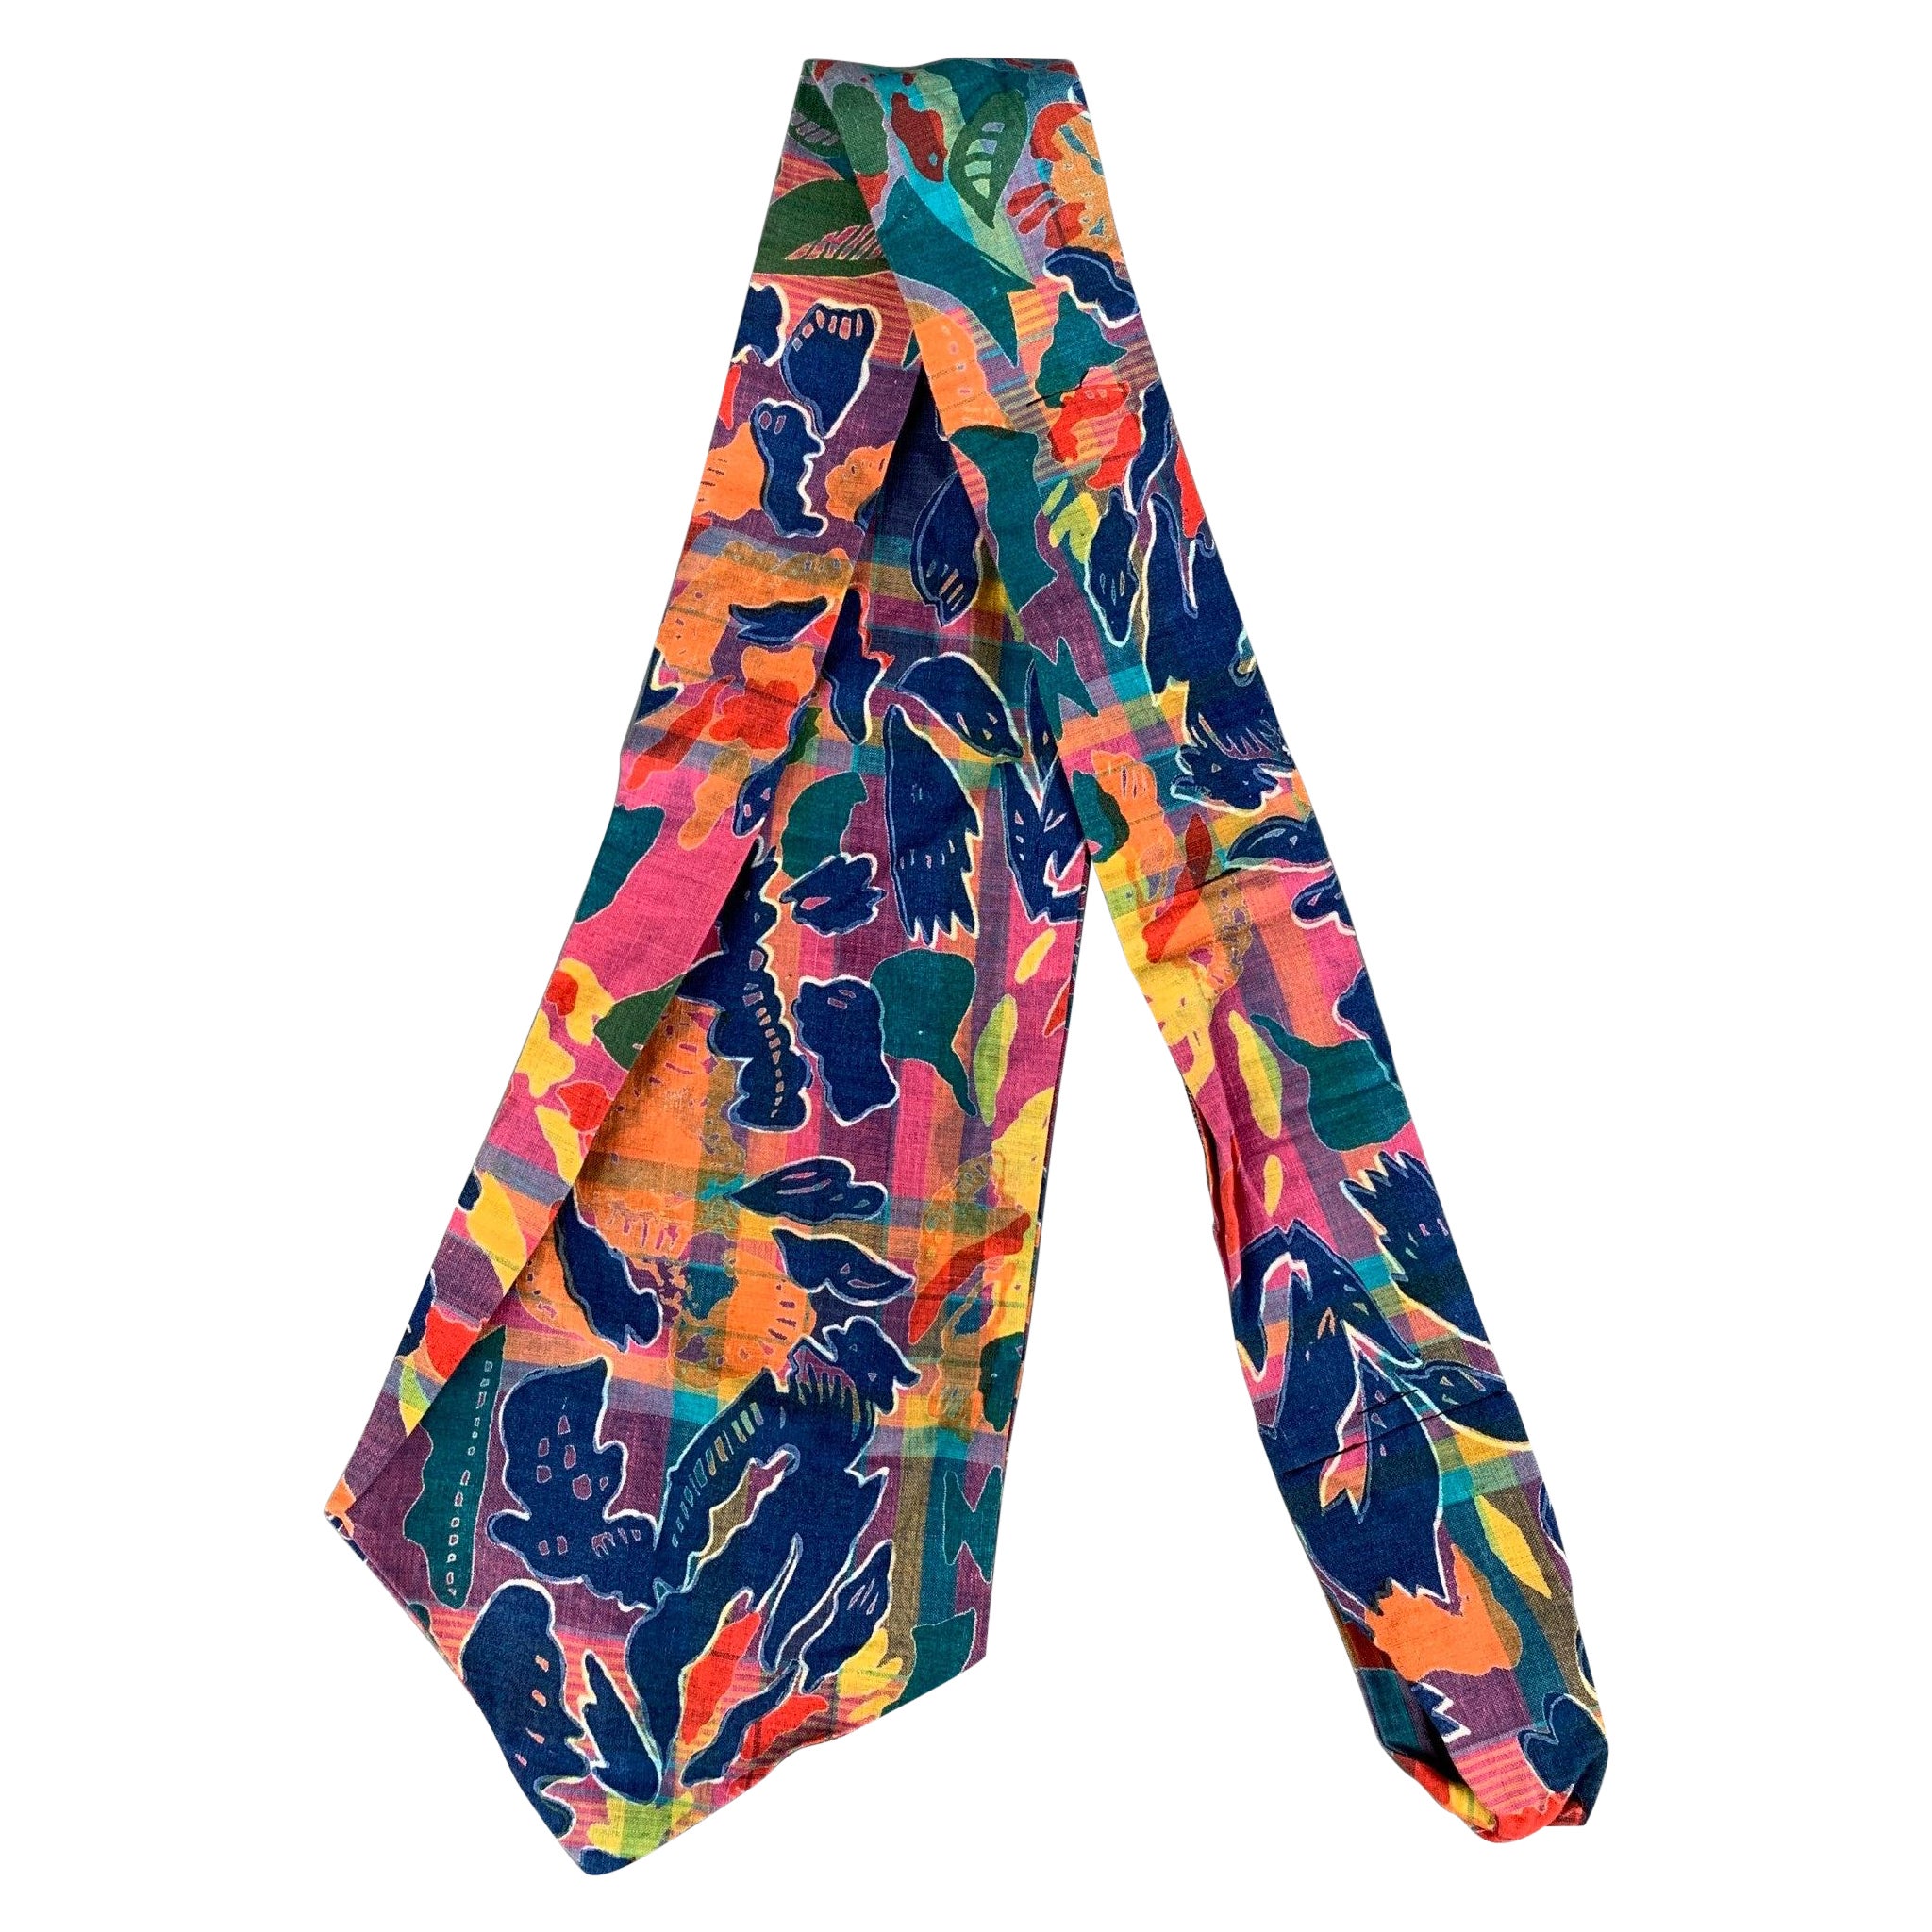 PAUL STUART Multi-Color Abstract Cotton Tie For Sale